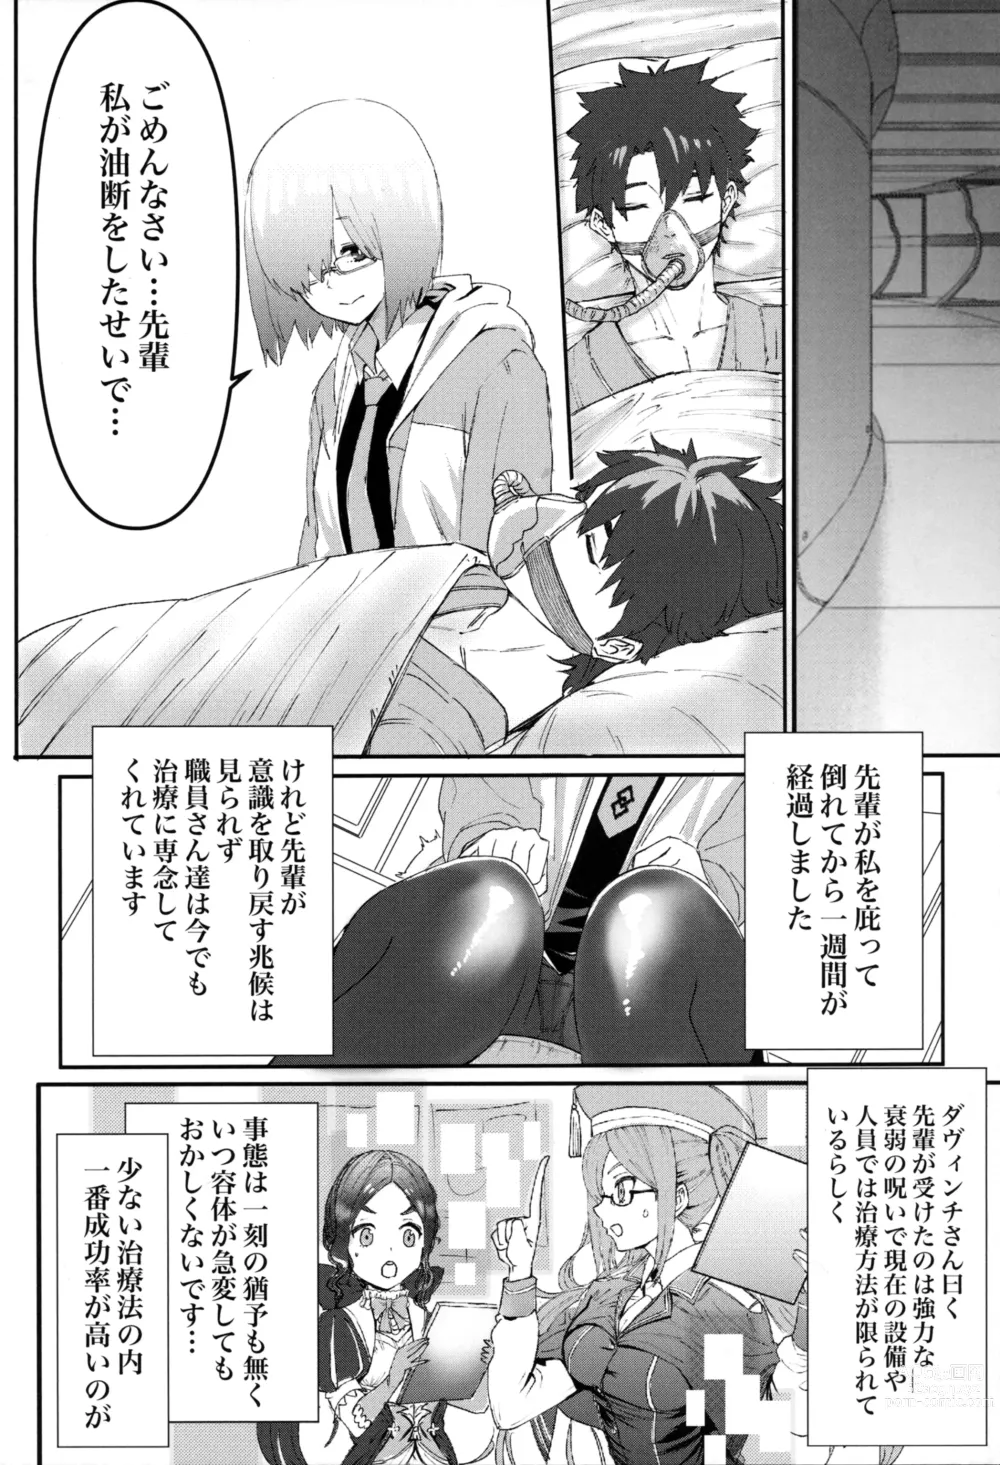 Page 5 of doujinshi Senpai no Tame ni NTR Mash!